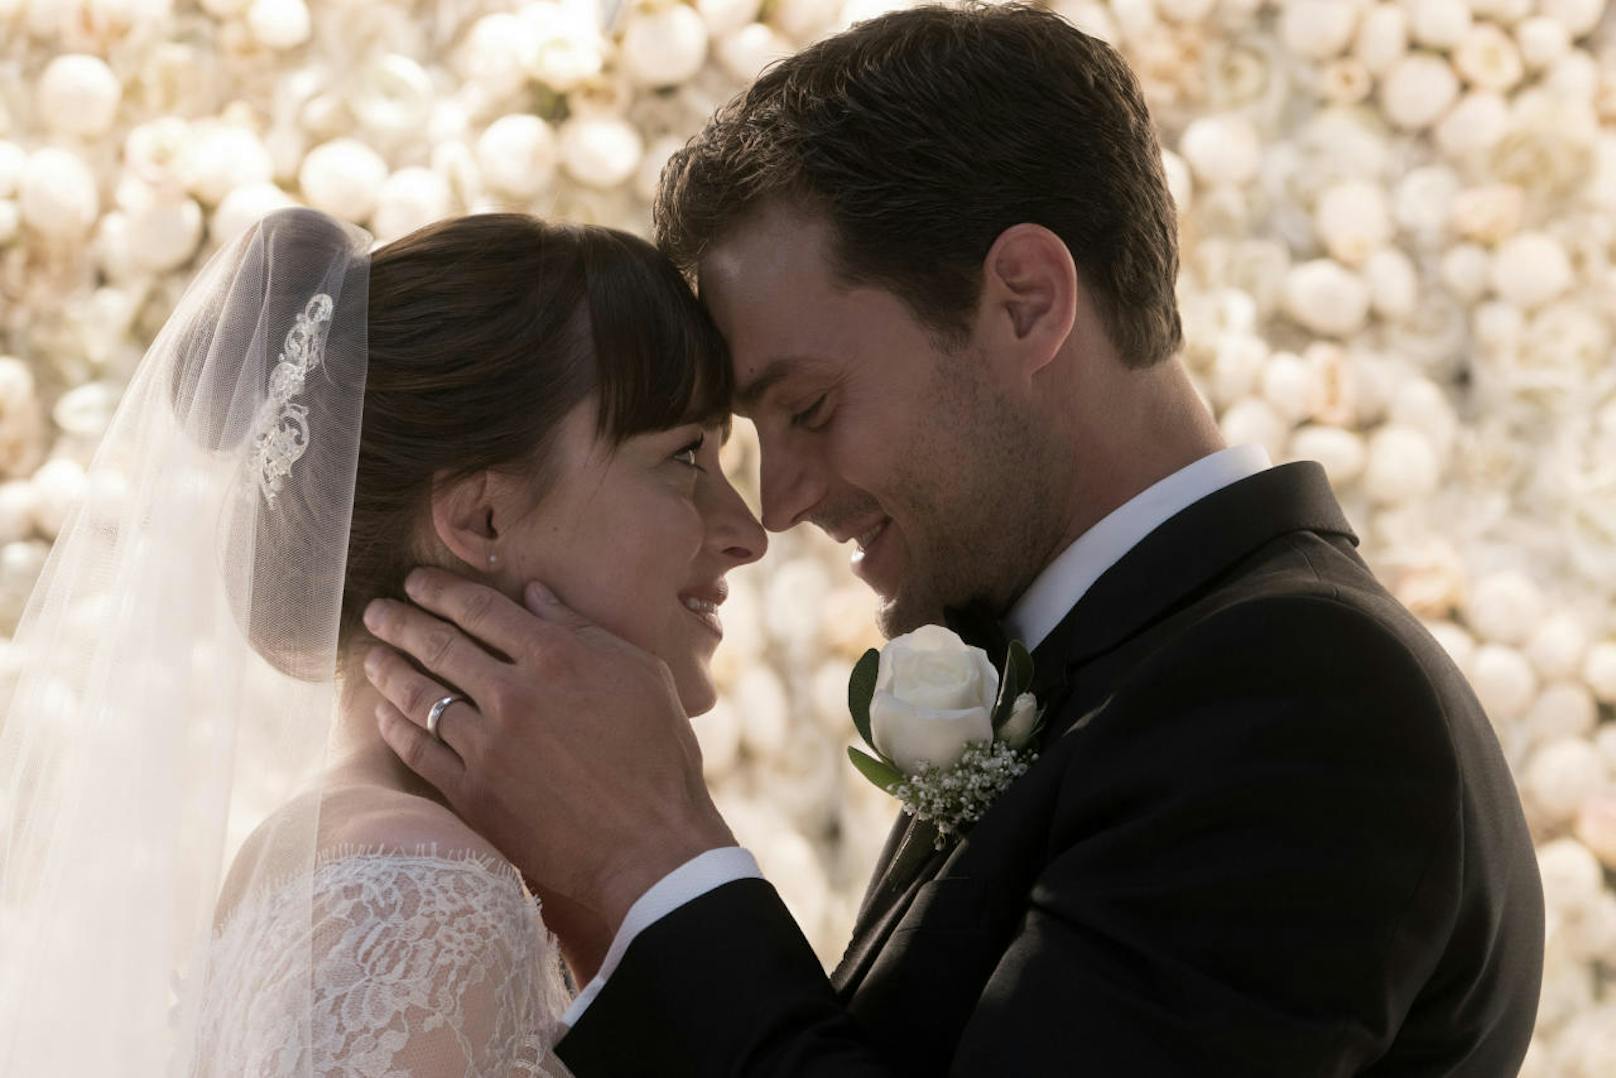 Traumhochzeit: Ana (Dakota Johnson) heiratet ihren fesselnden Märchenprinzen Christian (Jamie Dornan)